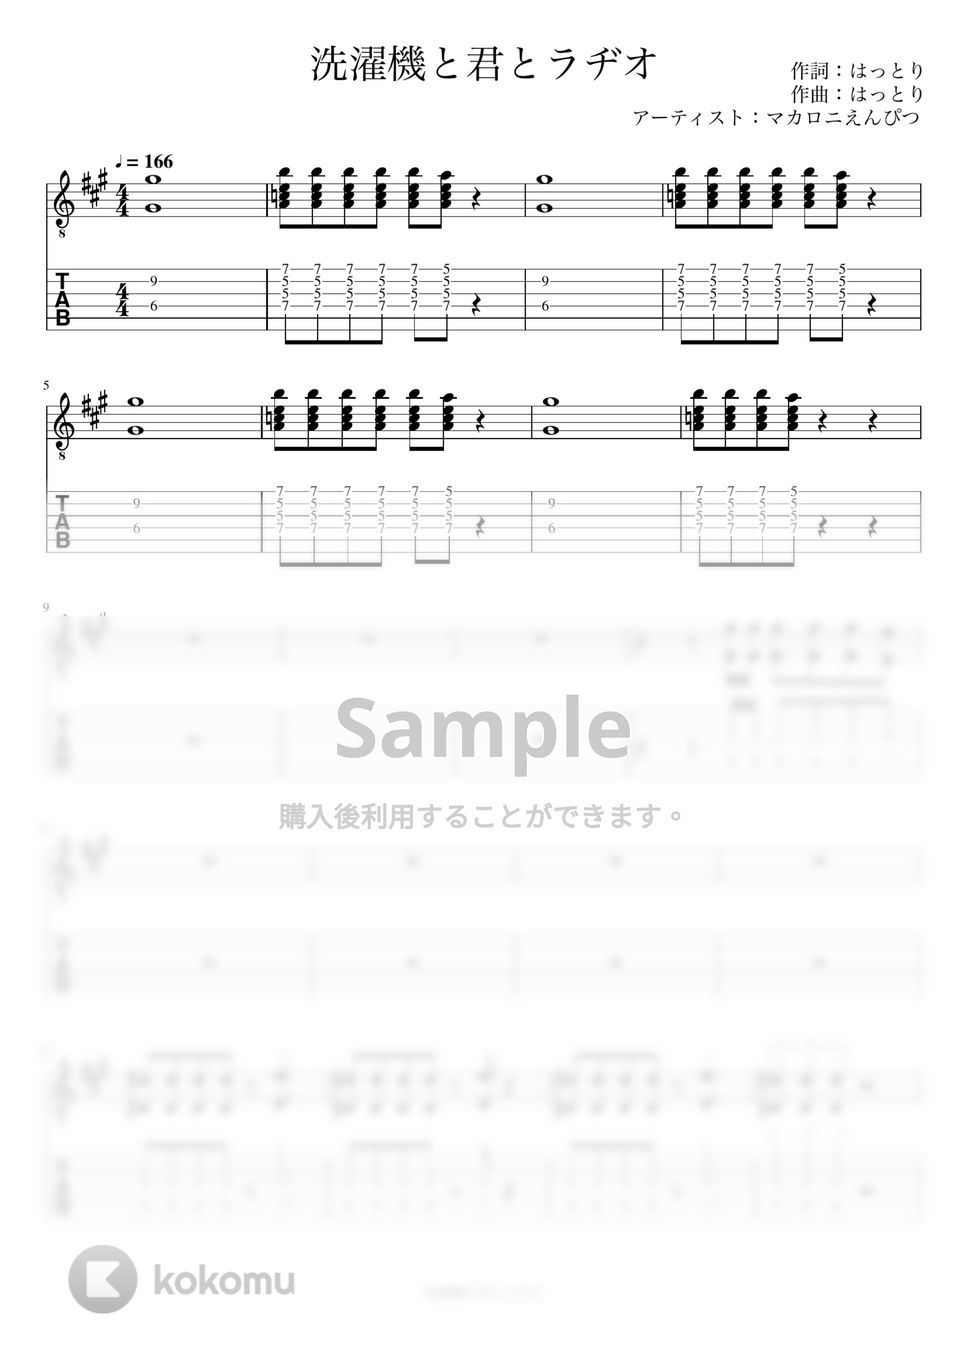 マカロニえんぴつ - 洗濯機と君とラヂオ (リードギター) by J-ROCKギターチャンネル